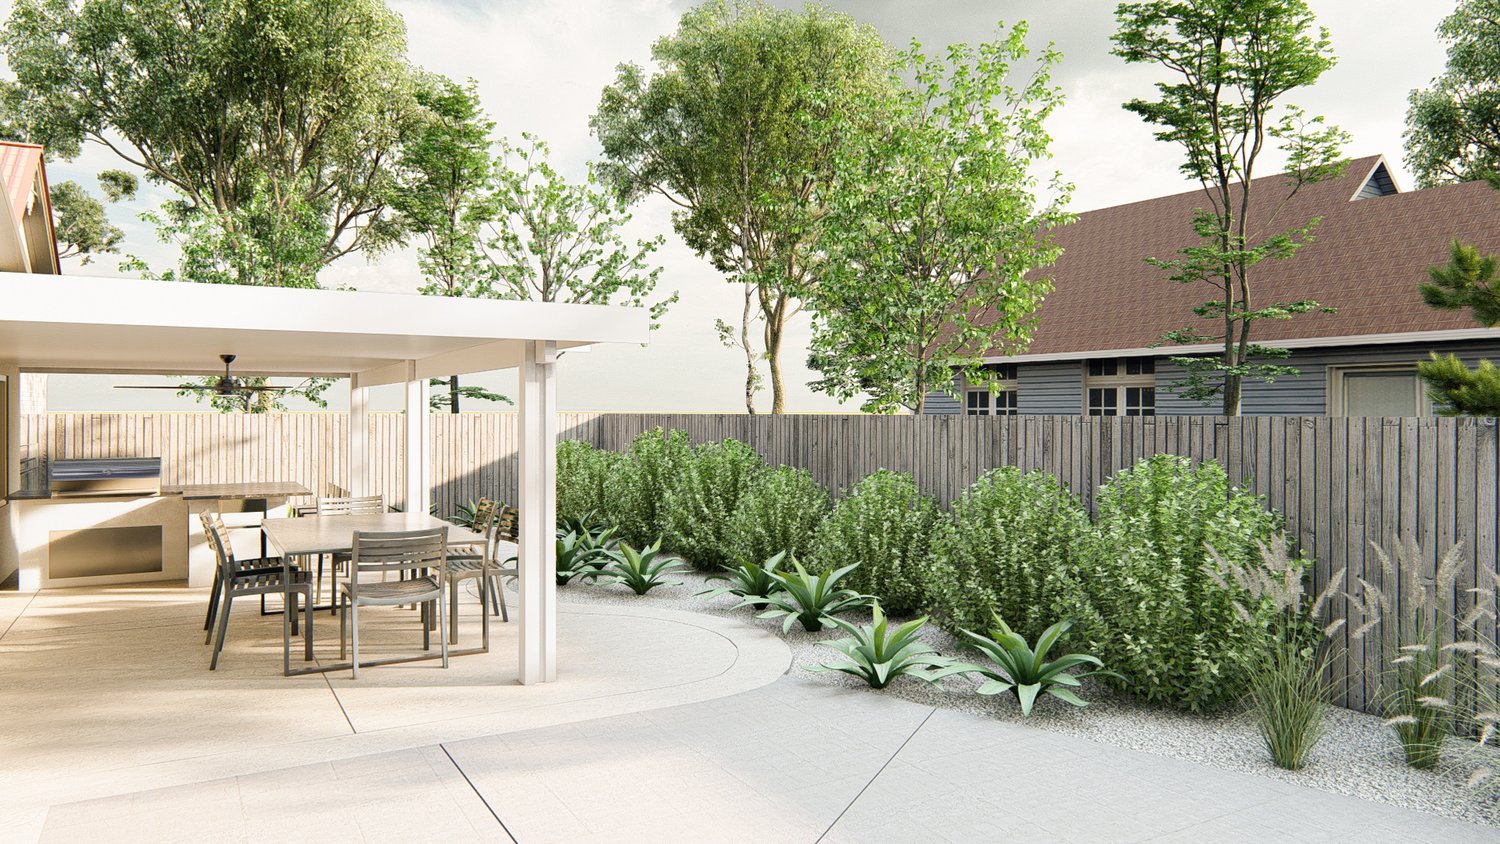 萨克拉门托侧院显示混凝土露台与室外厨房和餐厅区凉棚，与植物部分